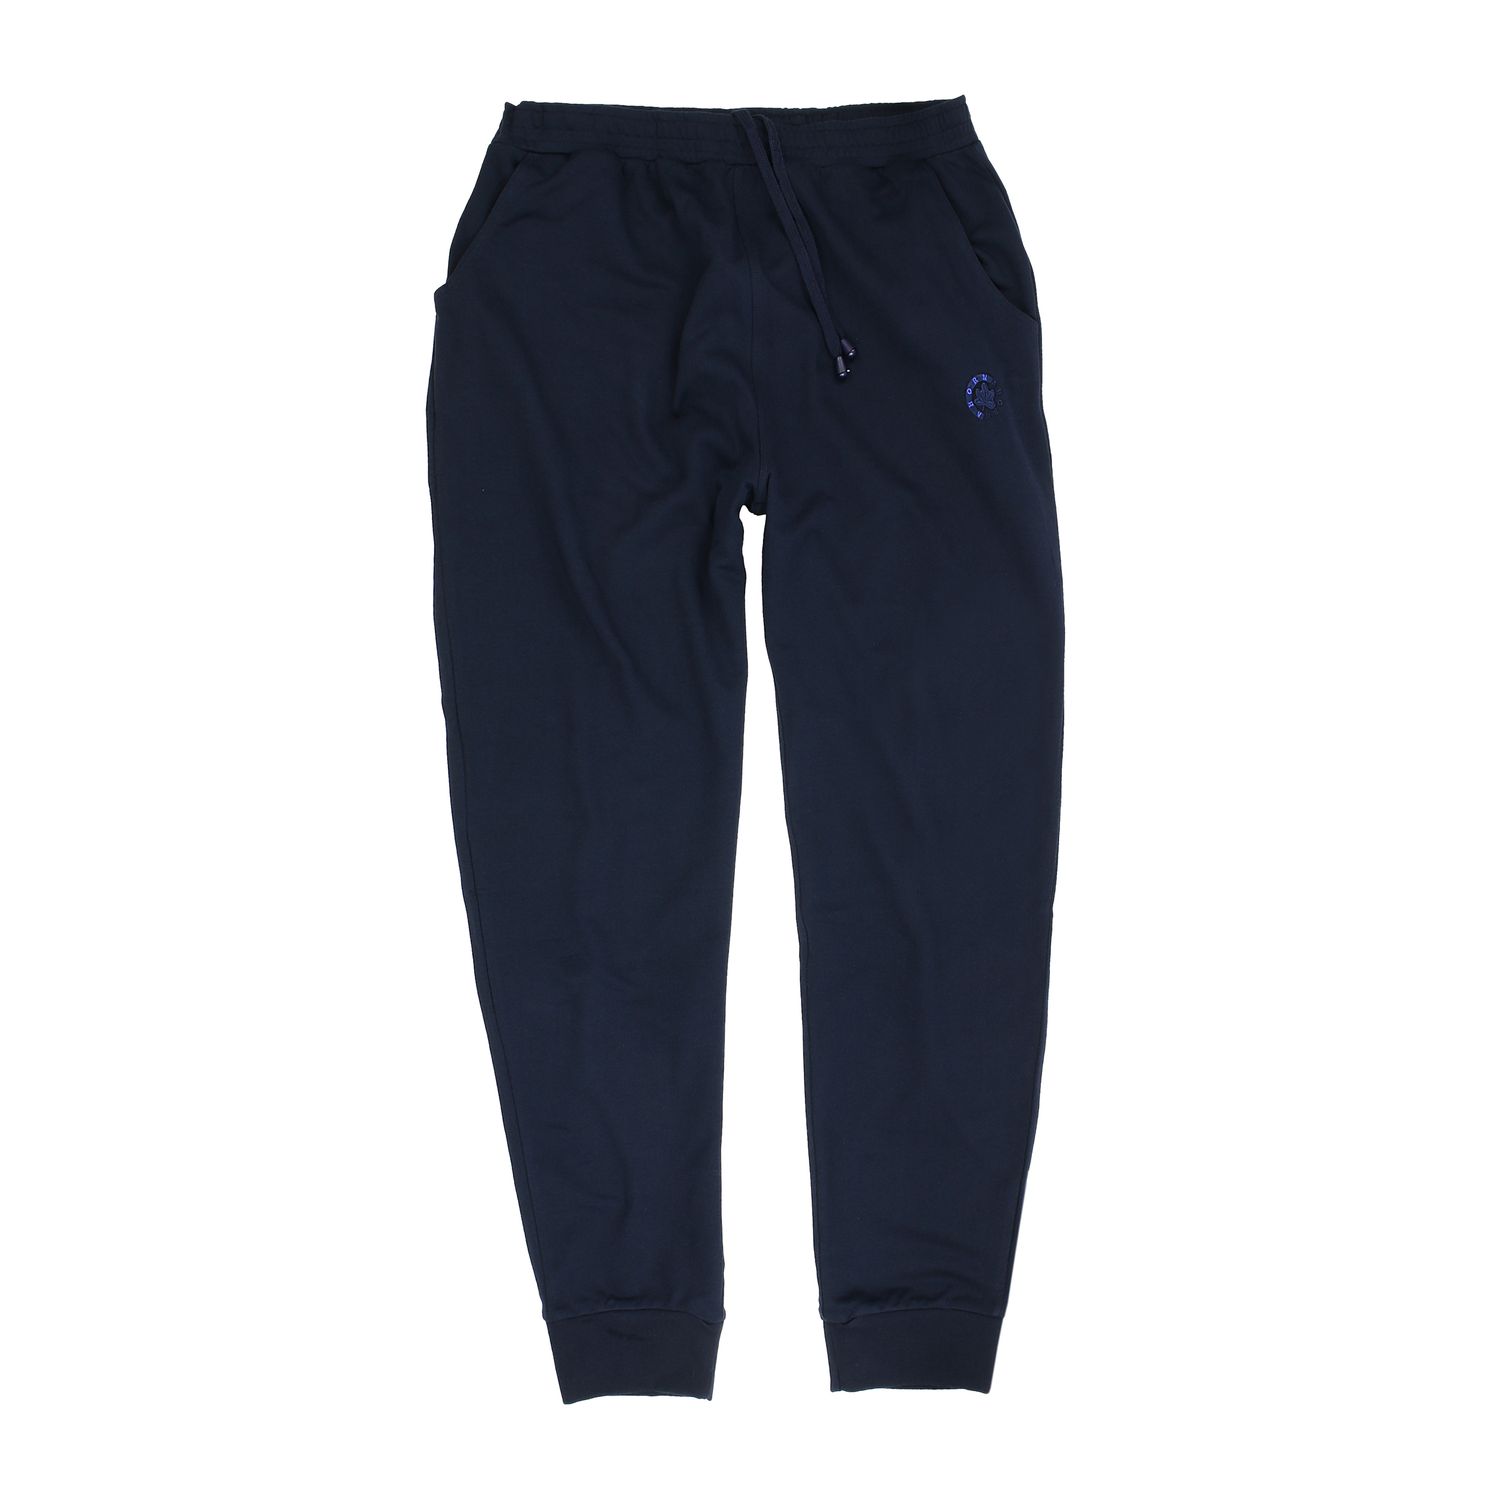 Pantalon de jogging bleu foncé by Ahorn Sportswear // grandes tailles jusqu'au 10XL 